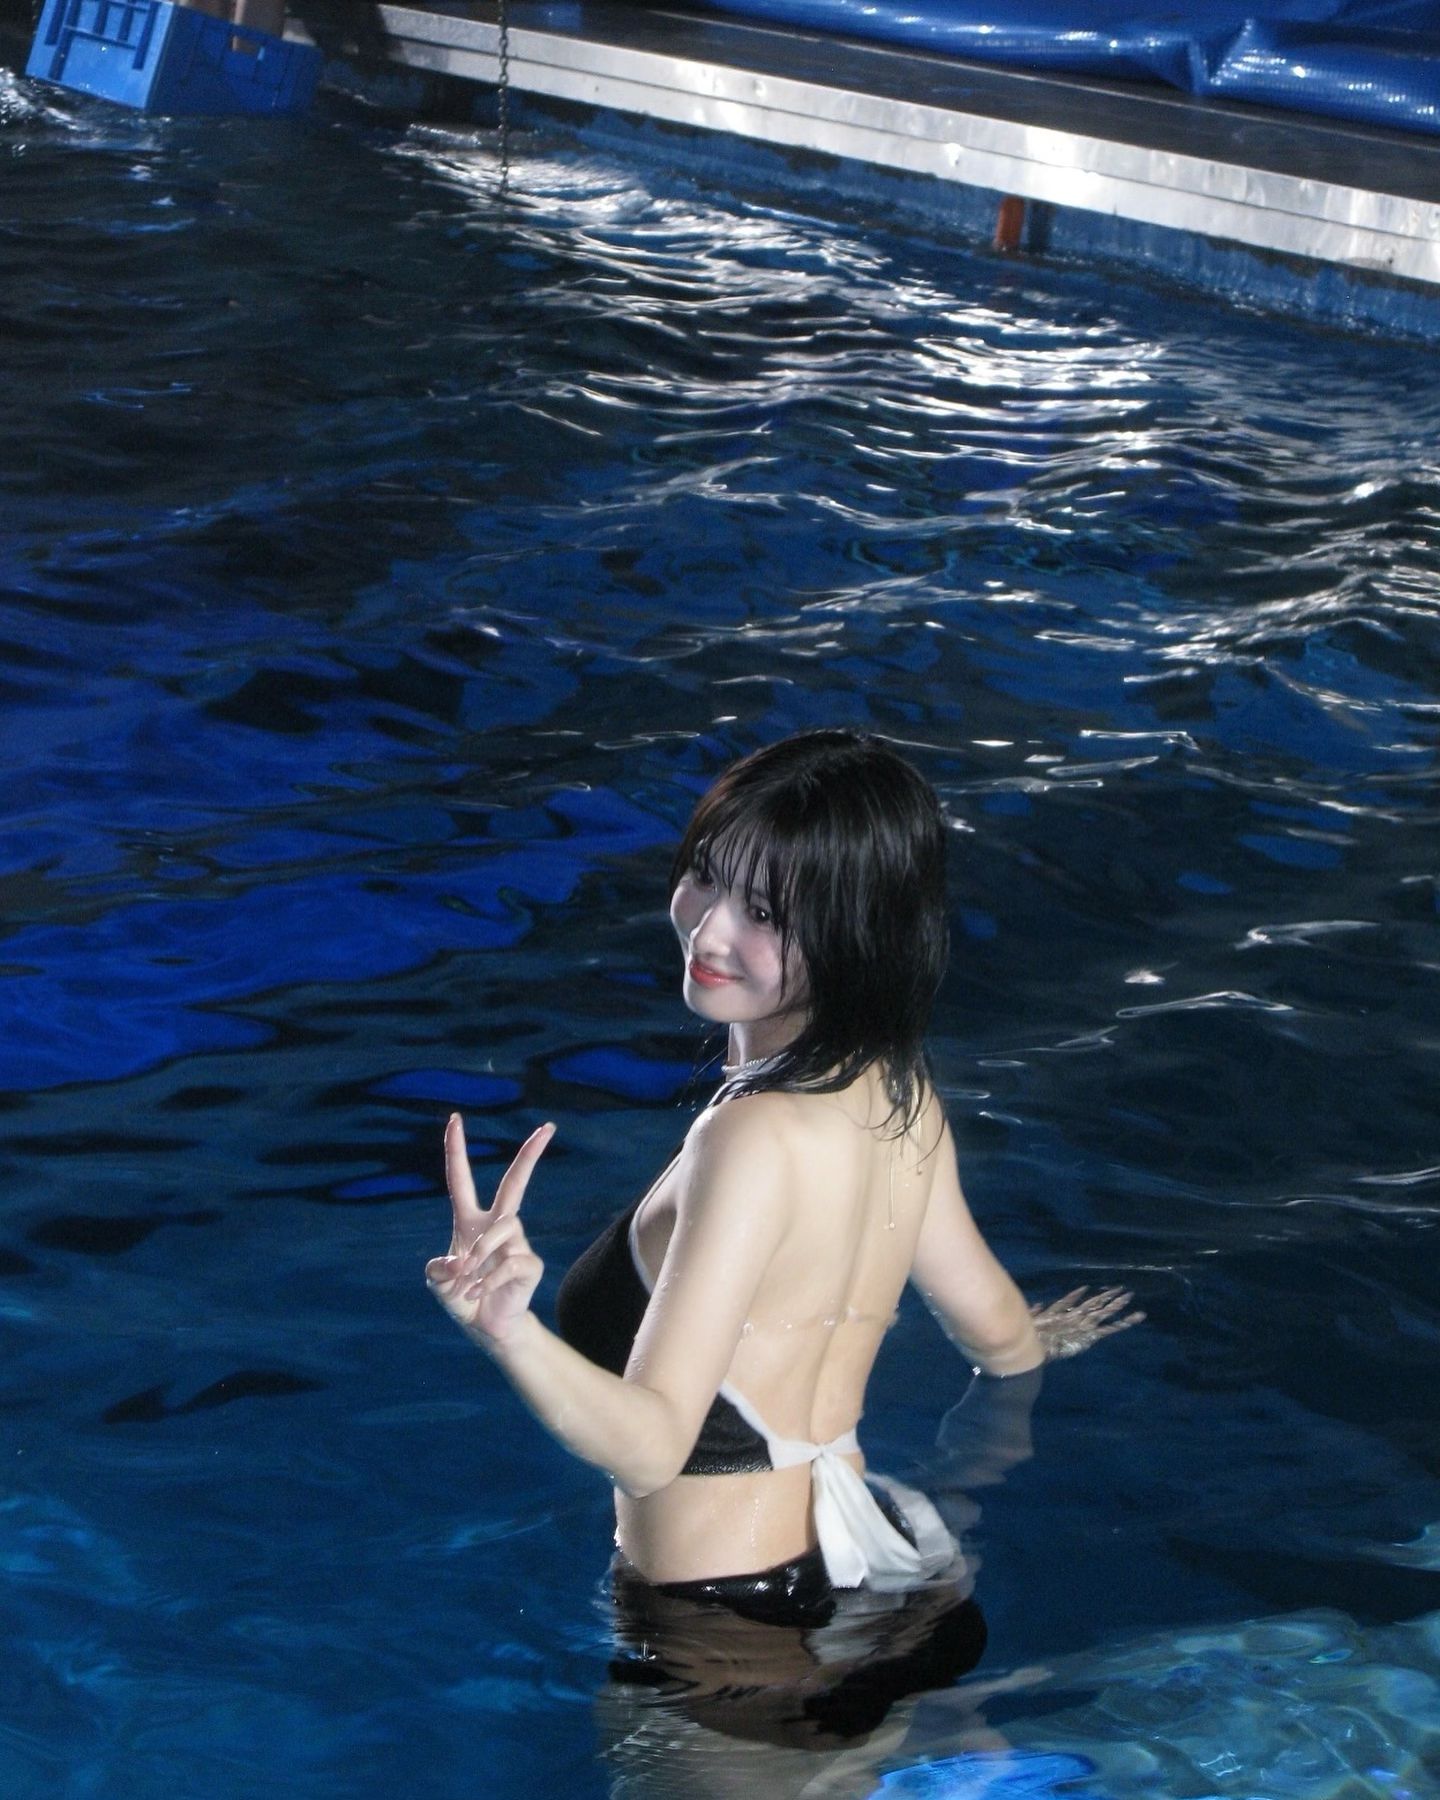 스쿠버다이빙 하는 트와이스 모모 검정 투피스 수영복 탄탄한 몸매